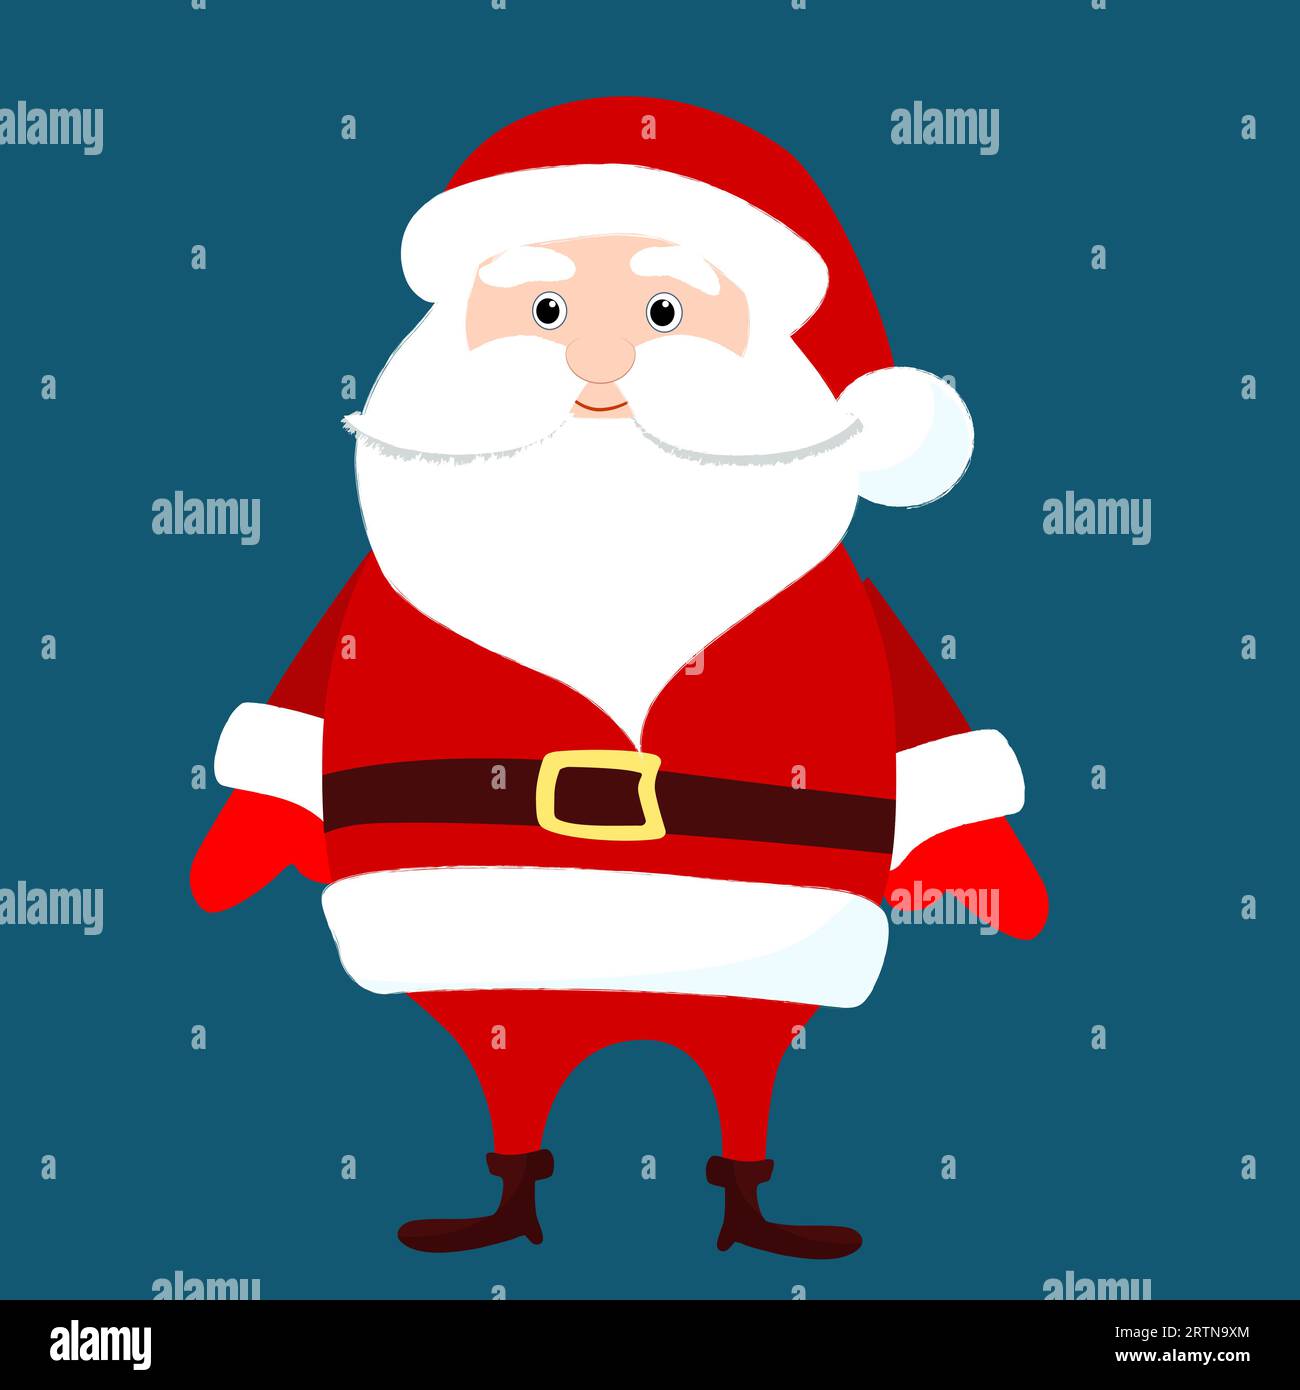 Der Weihnachtsmann steht aufrecht. Seitenansicht. Witziges und bezauberndes Design im Winter. Weihnachtsillustration im Zeichentrickstil. Stock Vektor